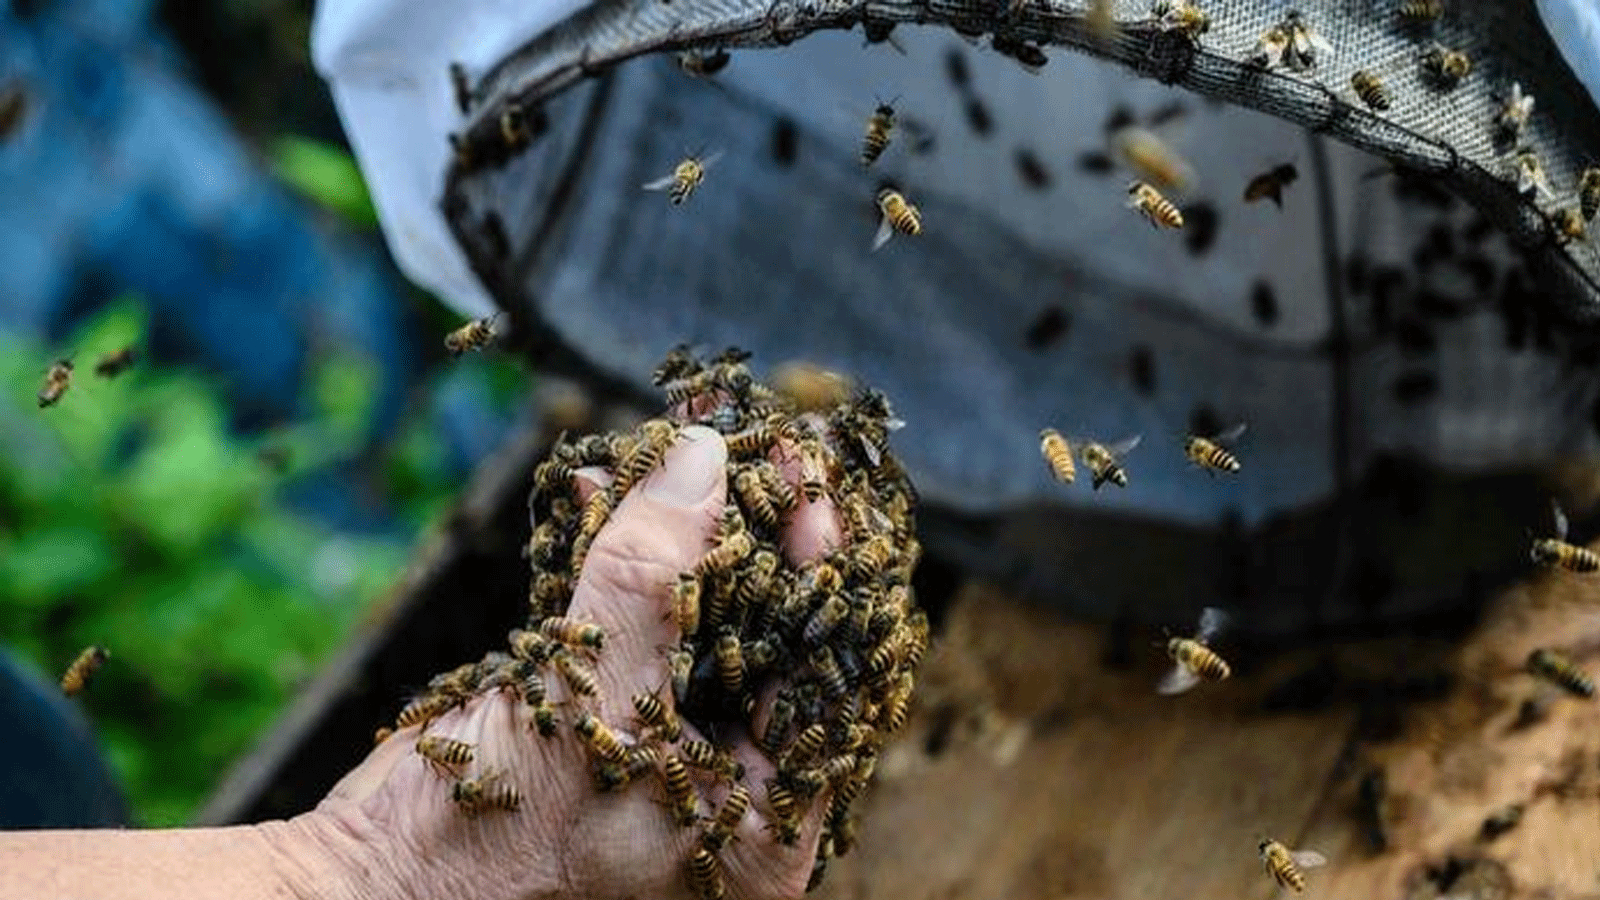  أعداد النحل تتناقص بسبب الزراعة المكثّفة والمبيدات الحشرية والتلوث وتغير المناخ